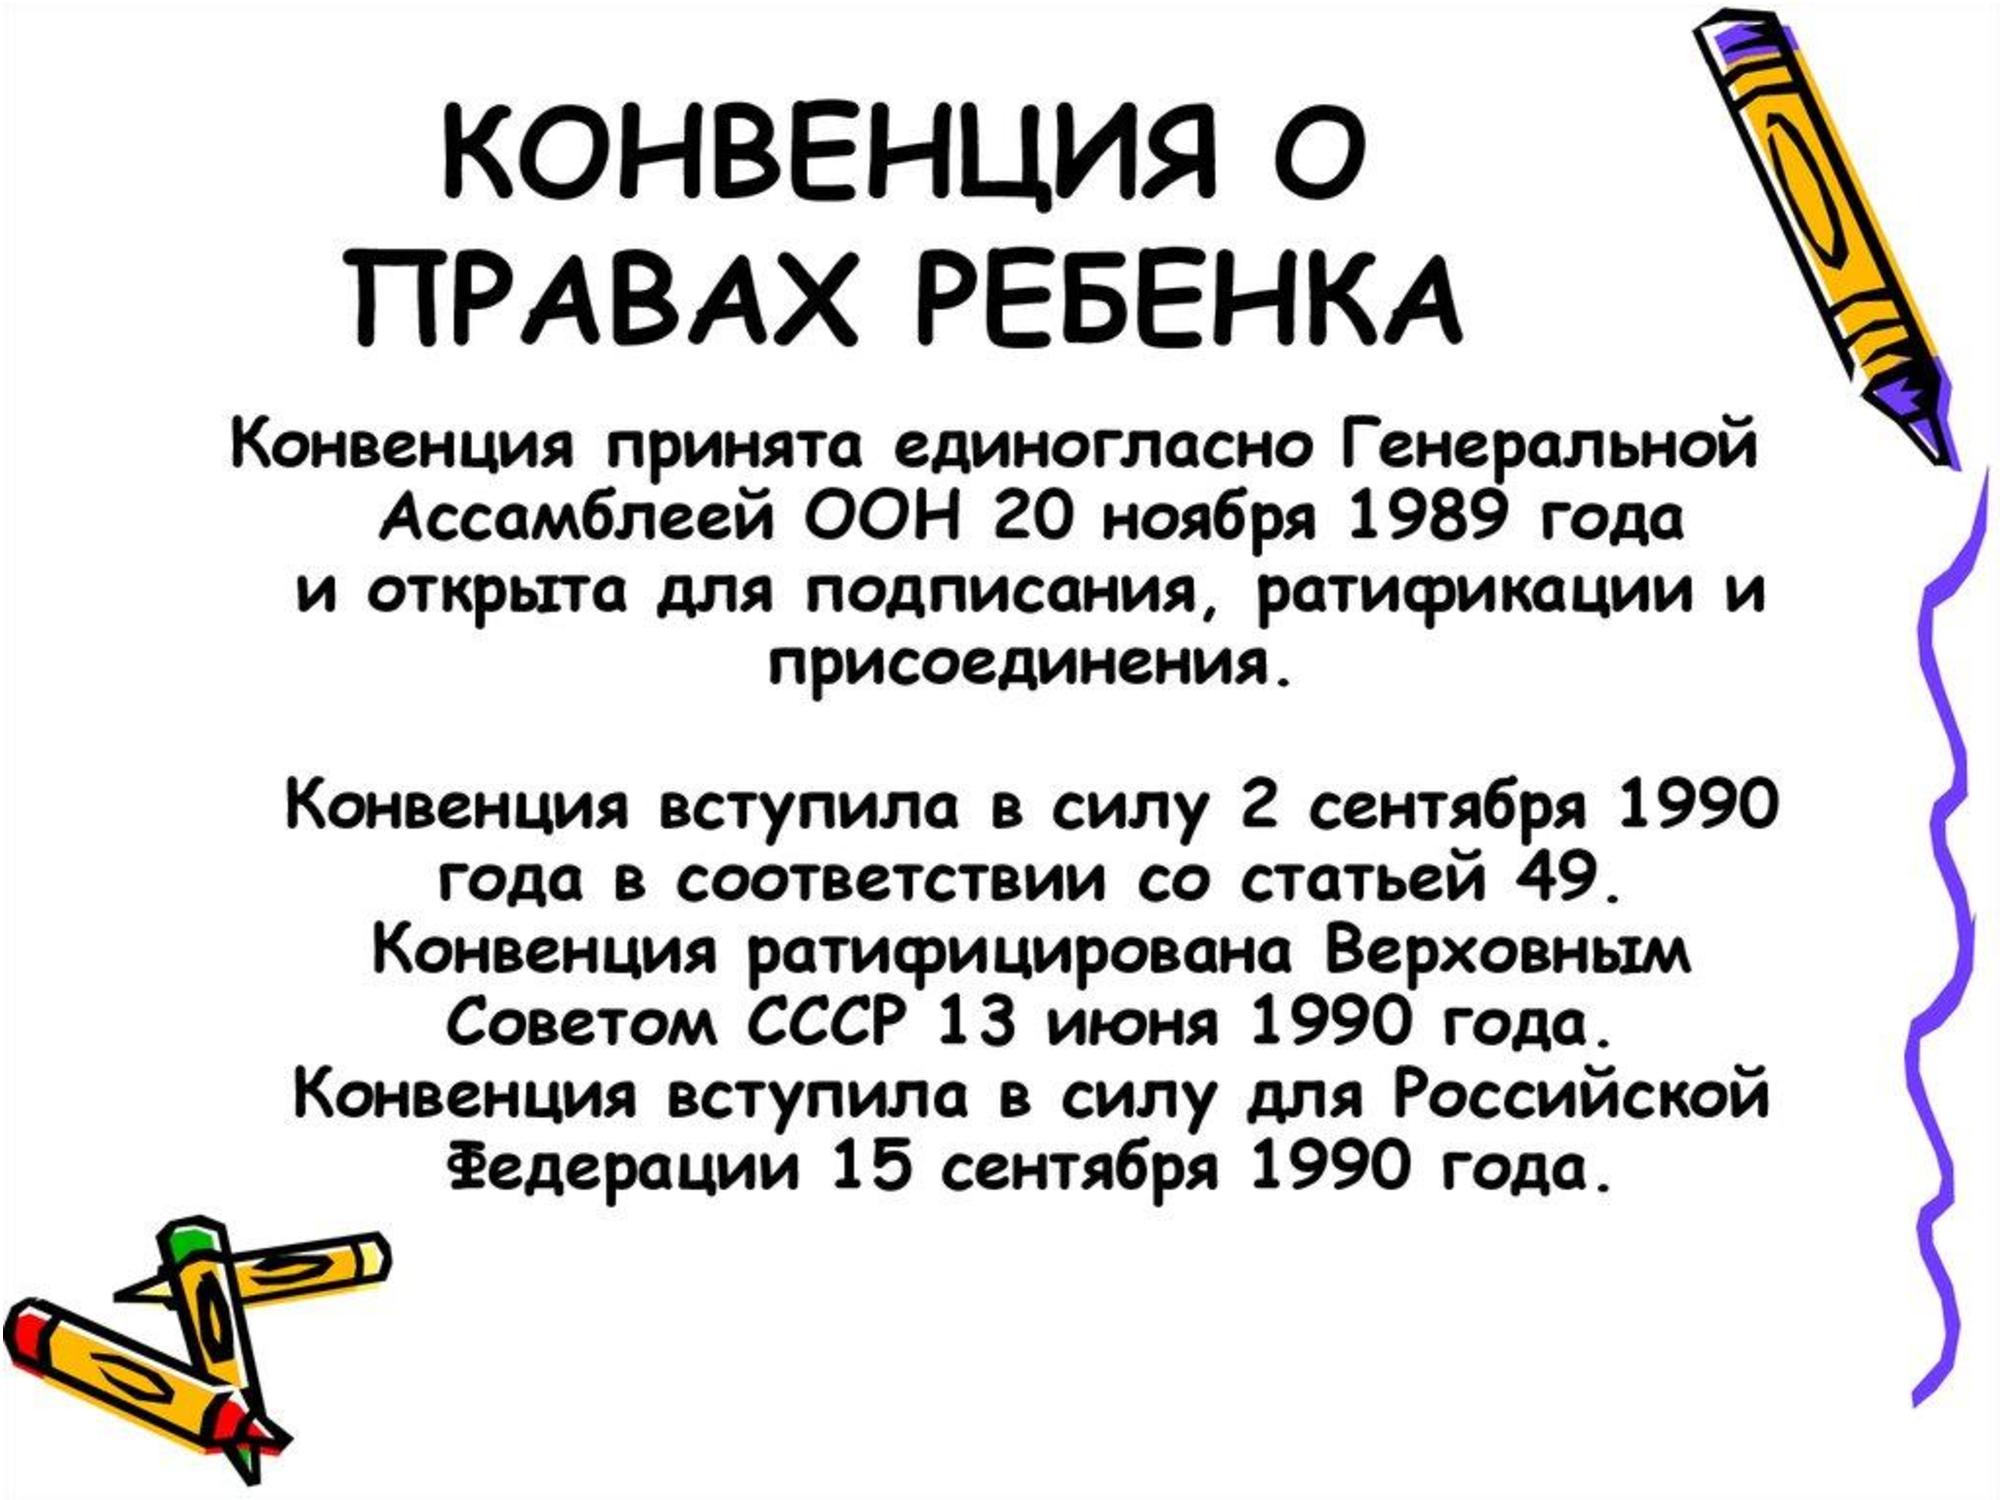 Россия ратифицировала конвенцию о правах ребенка в. Конвенци Яо правах ребёнка. Конвенция о Рава ребенка. Конвенция о пра¬вах ребёнка.